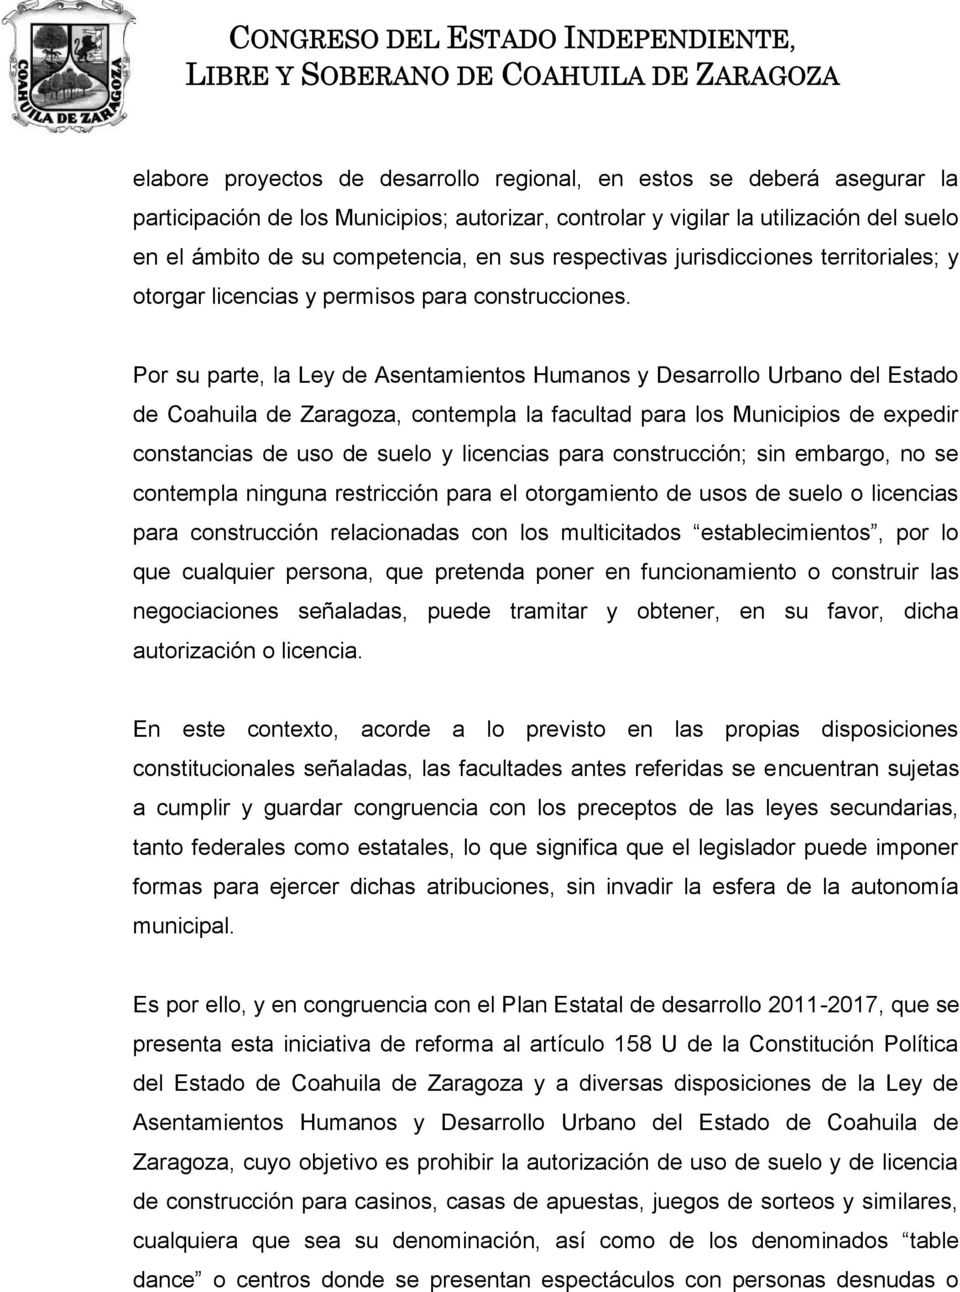 Por su parte, la Ley de sentamientos Humanos y Desarrollo Urbano del Estado de Coahuila de Zaragoza, contempla la facultad para los Municipios de expedir constancias de uso de suelo y licencias para